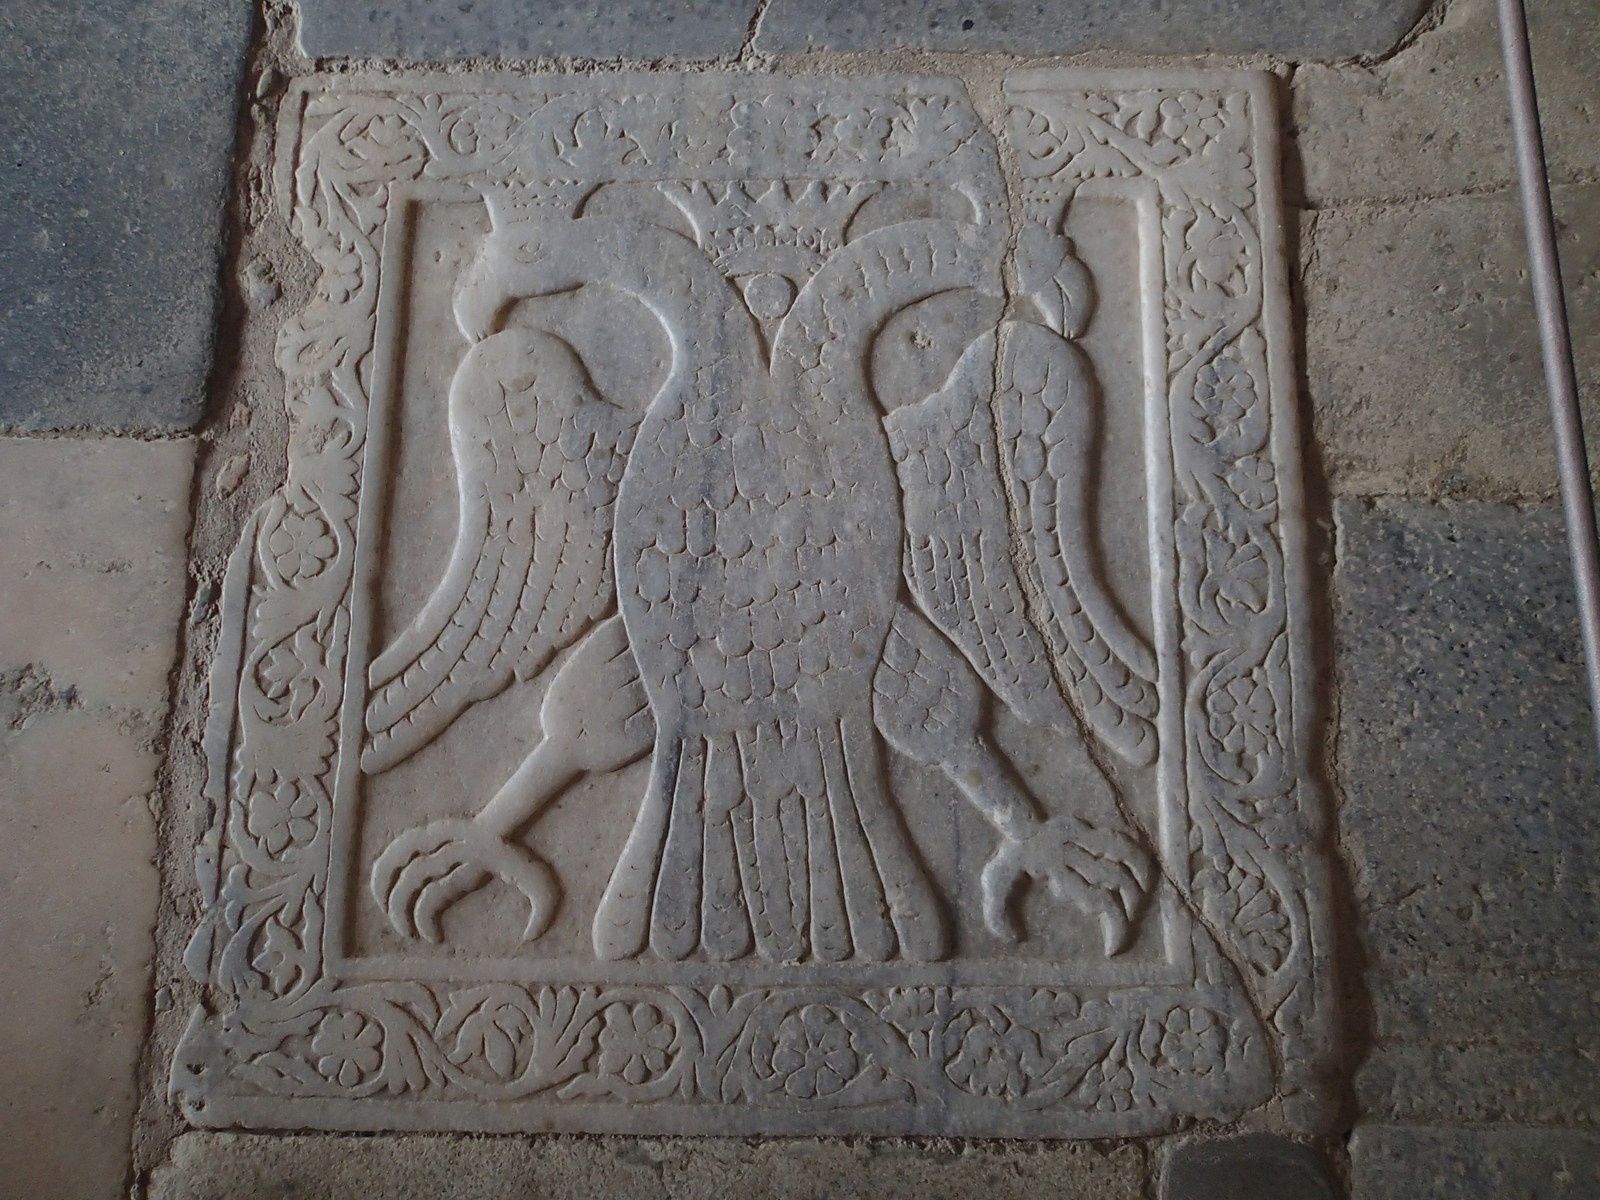 Plaque de marbre au sol de la Métropole, marquant l'emplacement exact (!) où selon la gardienne du bâtiment l'empereur Constantin XI à été couronné 